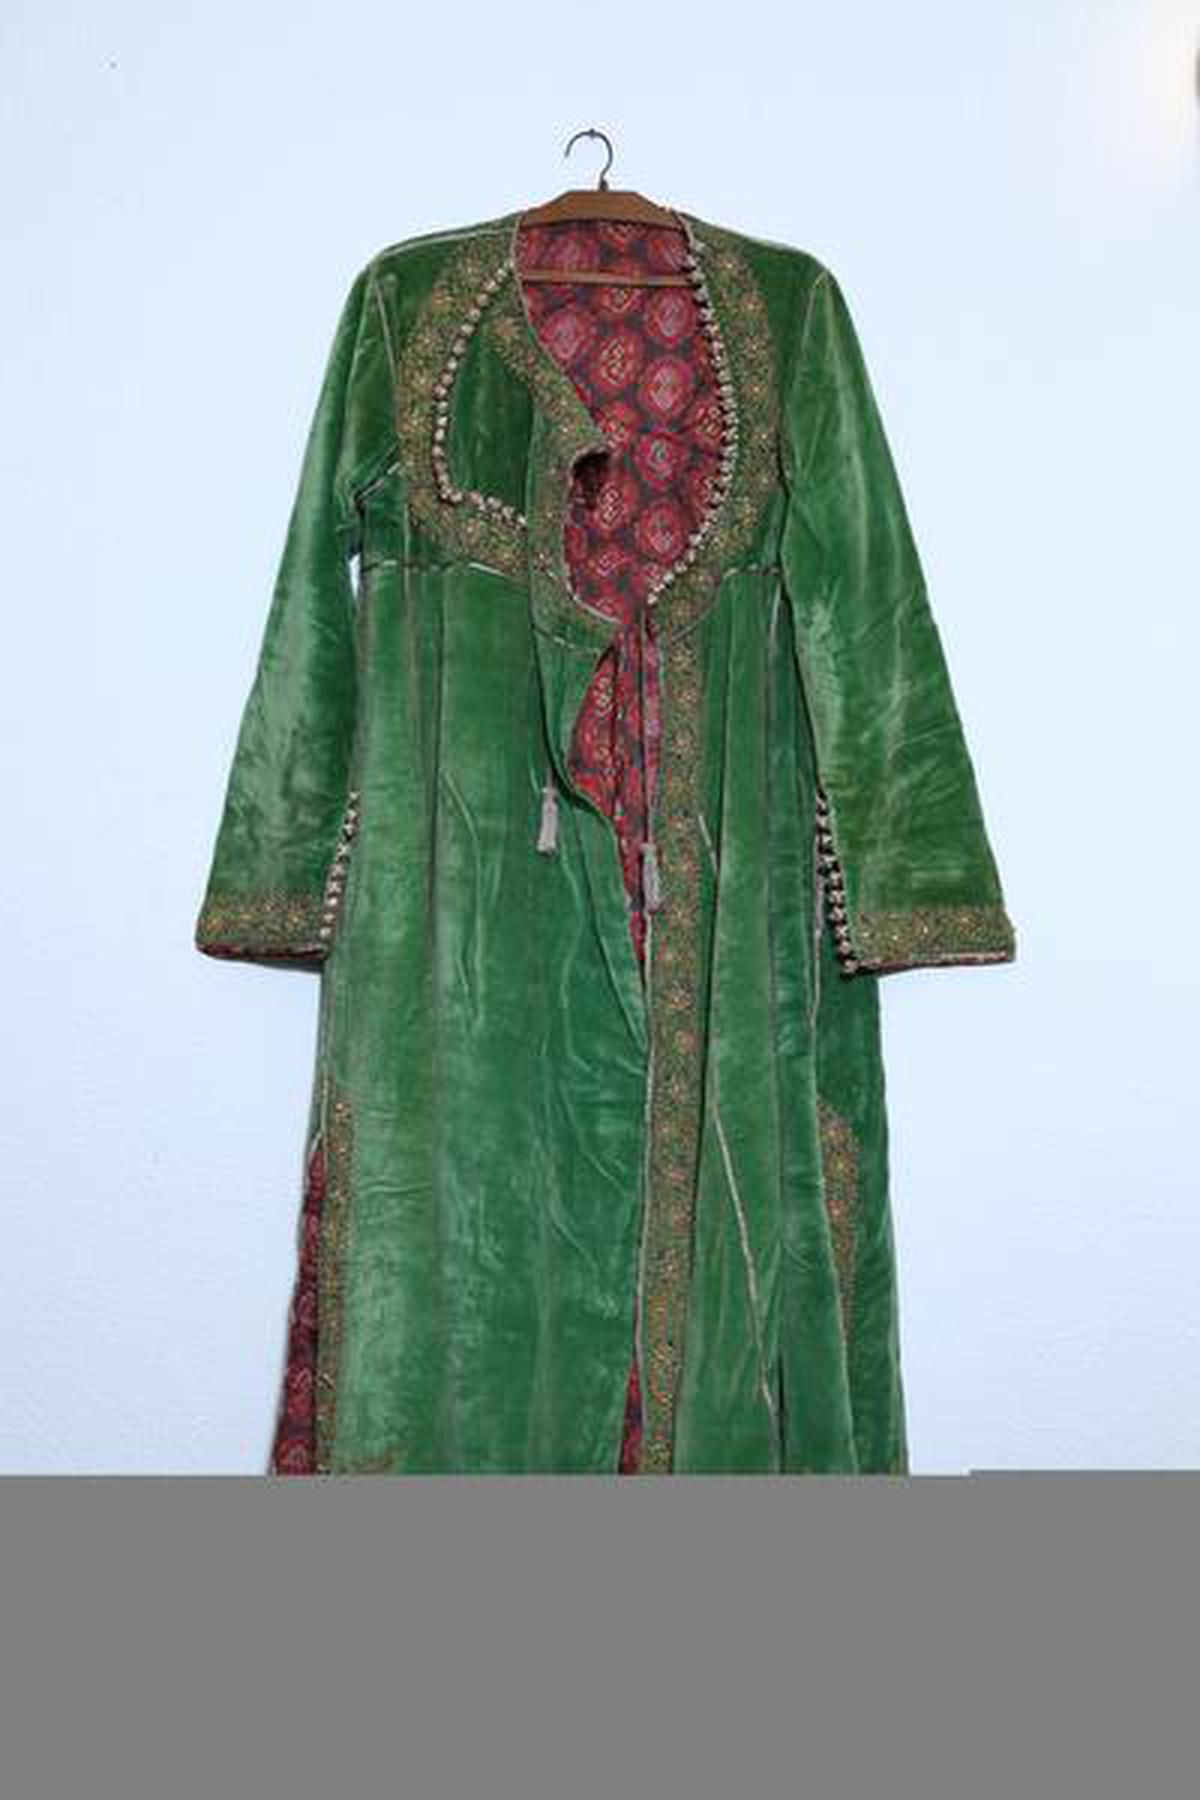 Wajid Ali Shah’s green robe.